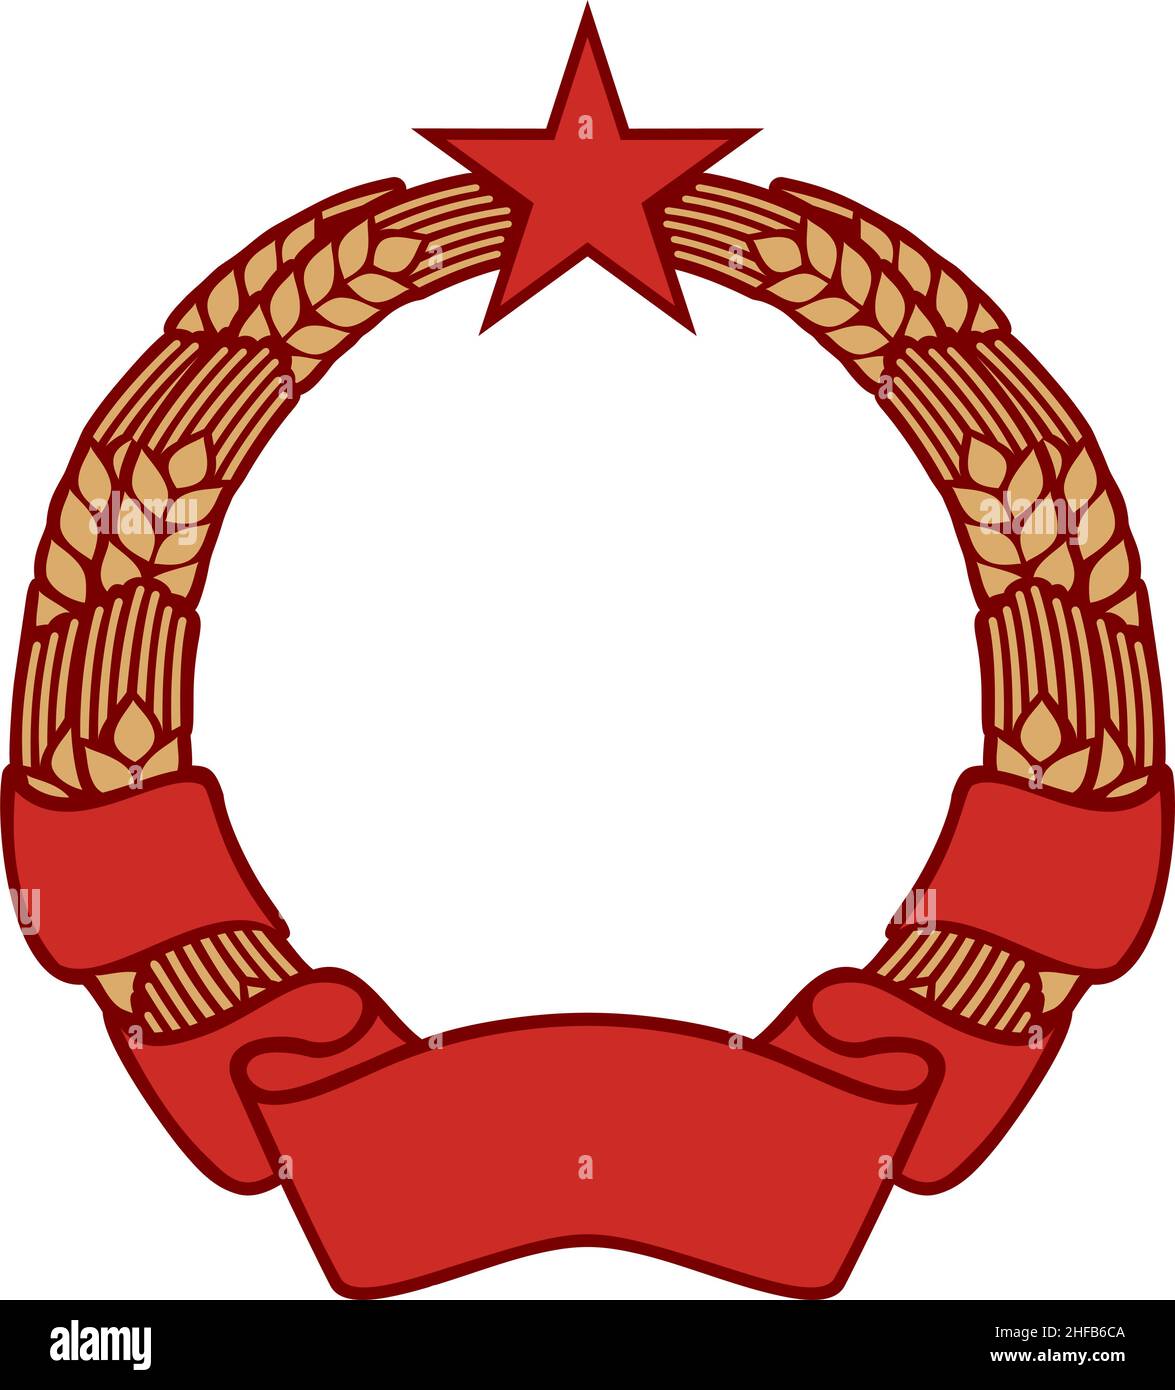 Simbolo del comunismo con corona di grano, stella e bandiera (icona del socialismo). Illustrazione vettoriale Illustrazione Vettoriale